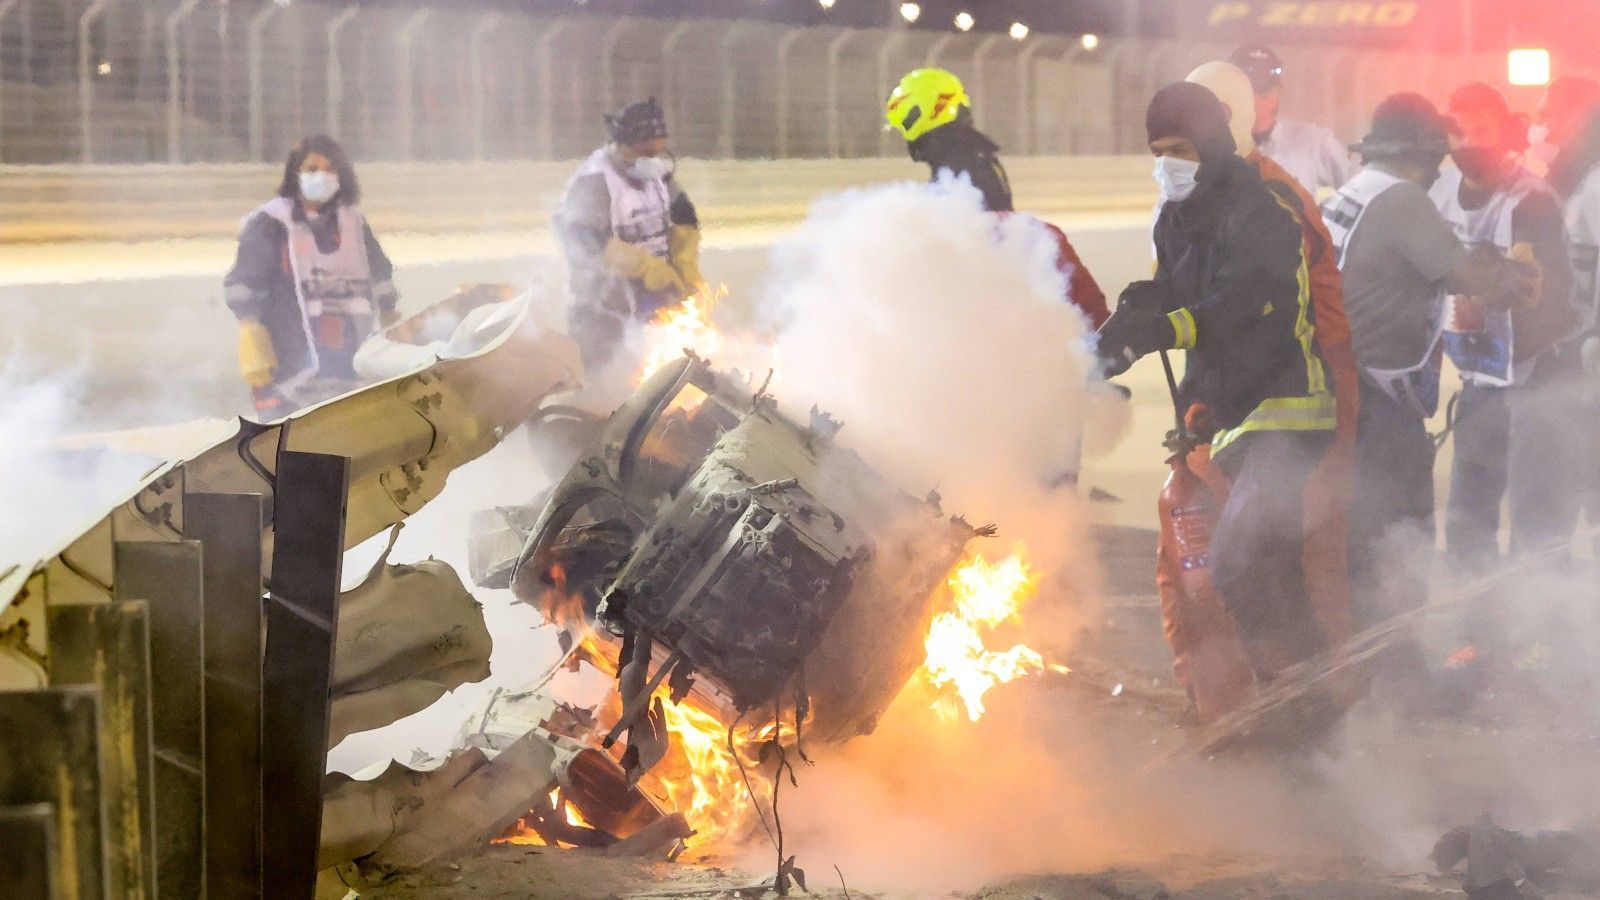 
                <strong>Feuer-Crash von Grosjean</strong><br>
                Auch Romain Grosjean wurde bereits vom Halo beschützt. Bei seinem schweren Feuer-Crash in Bahrain im Jahr 2020 krachte sein Bolide in die Leitplanke und durchbohrte sie. Der Cockpitschutz sorgte dafür, dass sich die Leitplanken über dem Cockpit teilten, Grosjean konnte das Auto aus eigener Kraft verlassen.
              